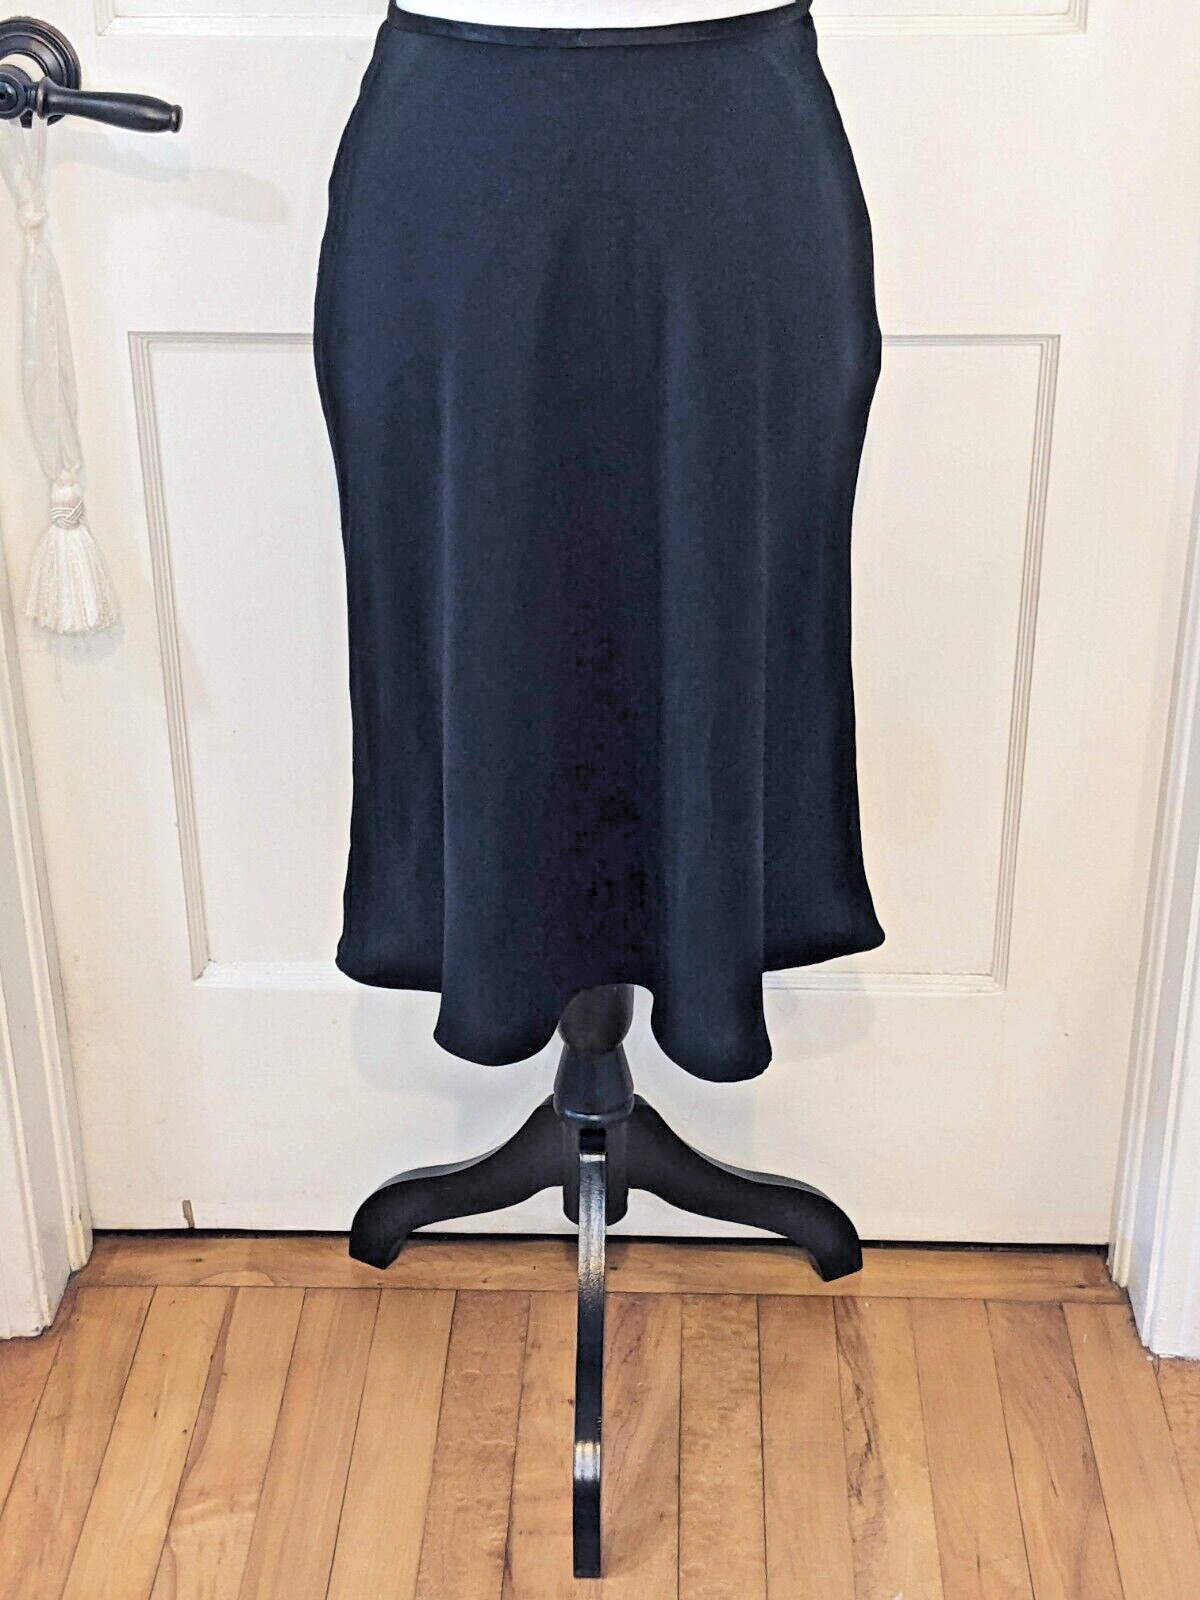 Petite Black Skirt 6P VTG 80s Midi Rise Fit & Flo… - image 1